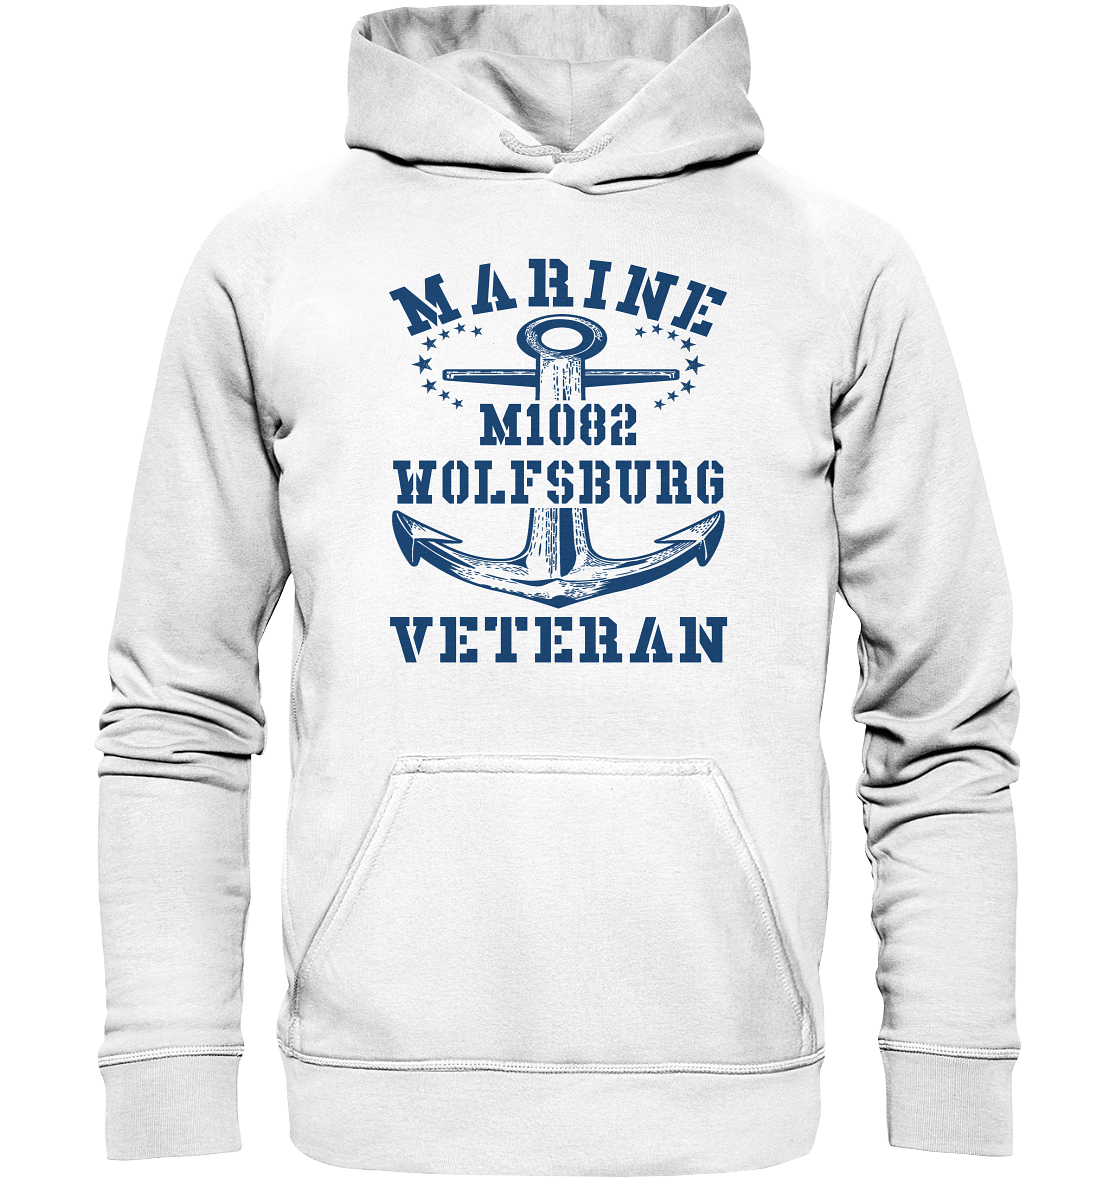 MARINE VETERAN M1082 WOLFSBURG - Basic Unisex Hoodie